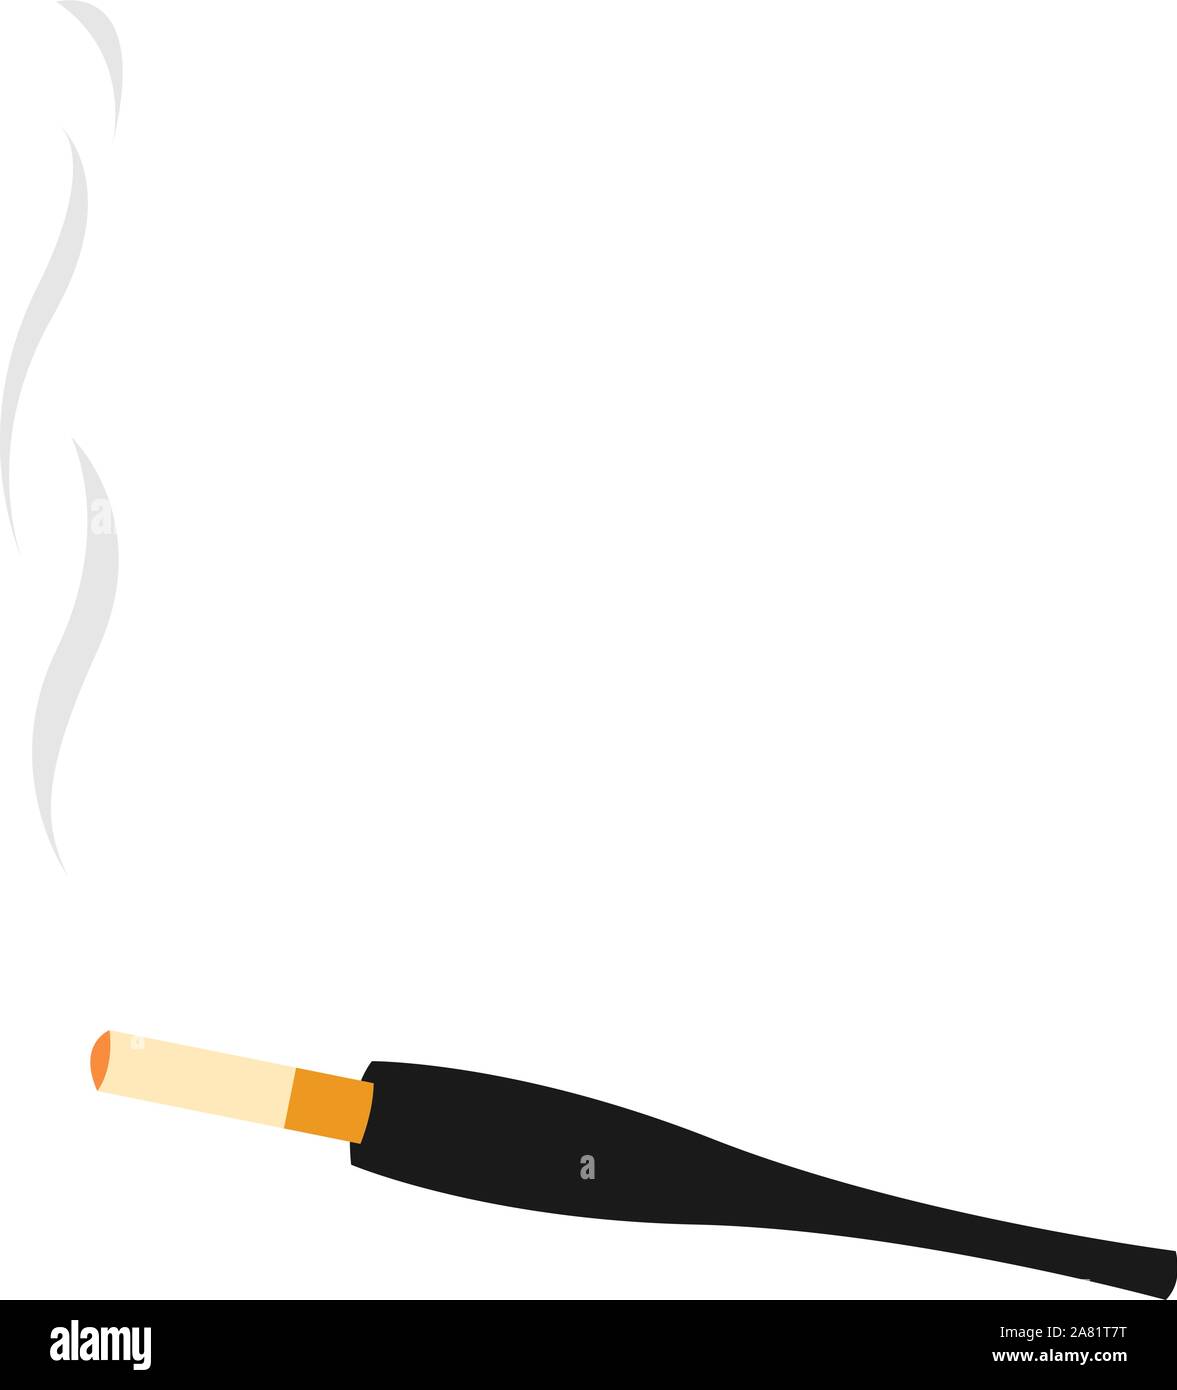 Cigarette holder, illustration, vector on white background. Stock Vector